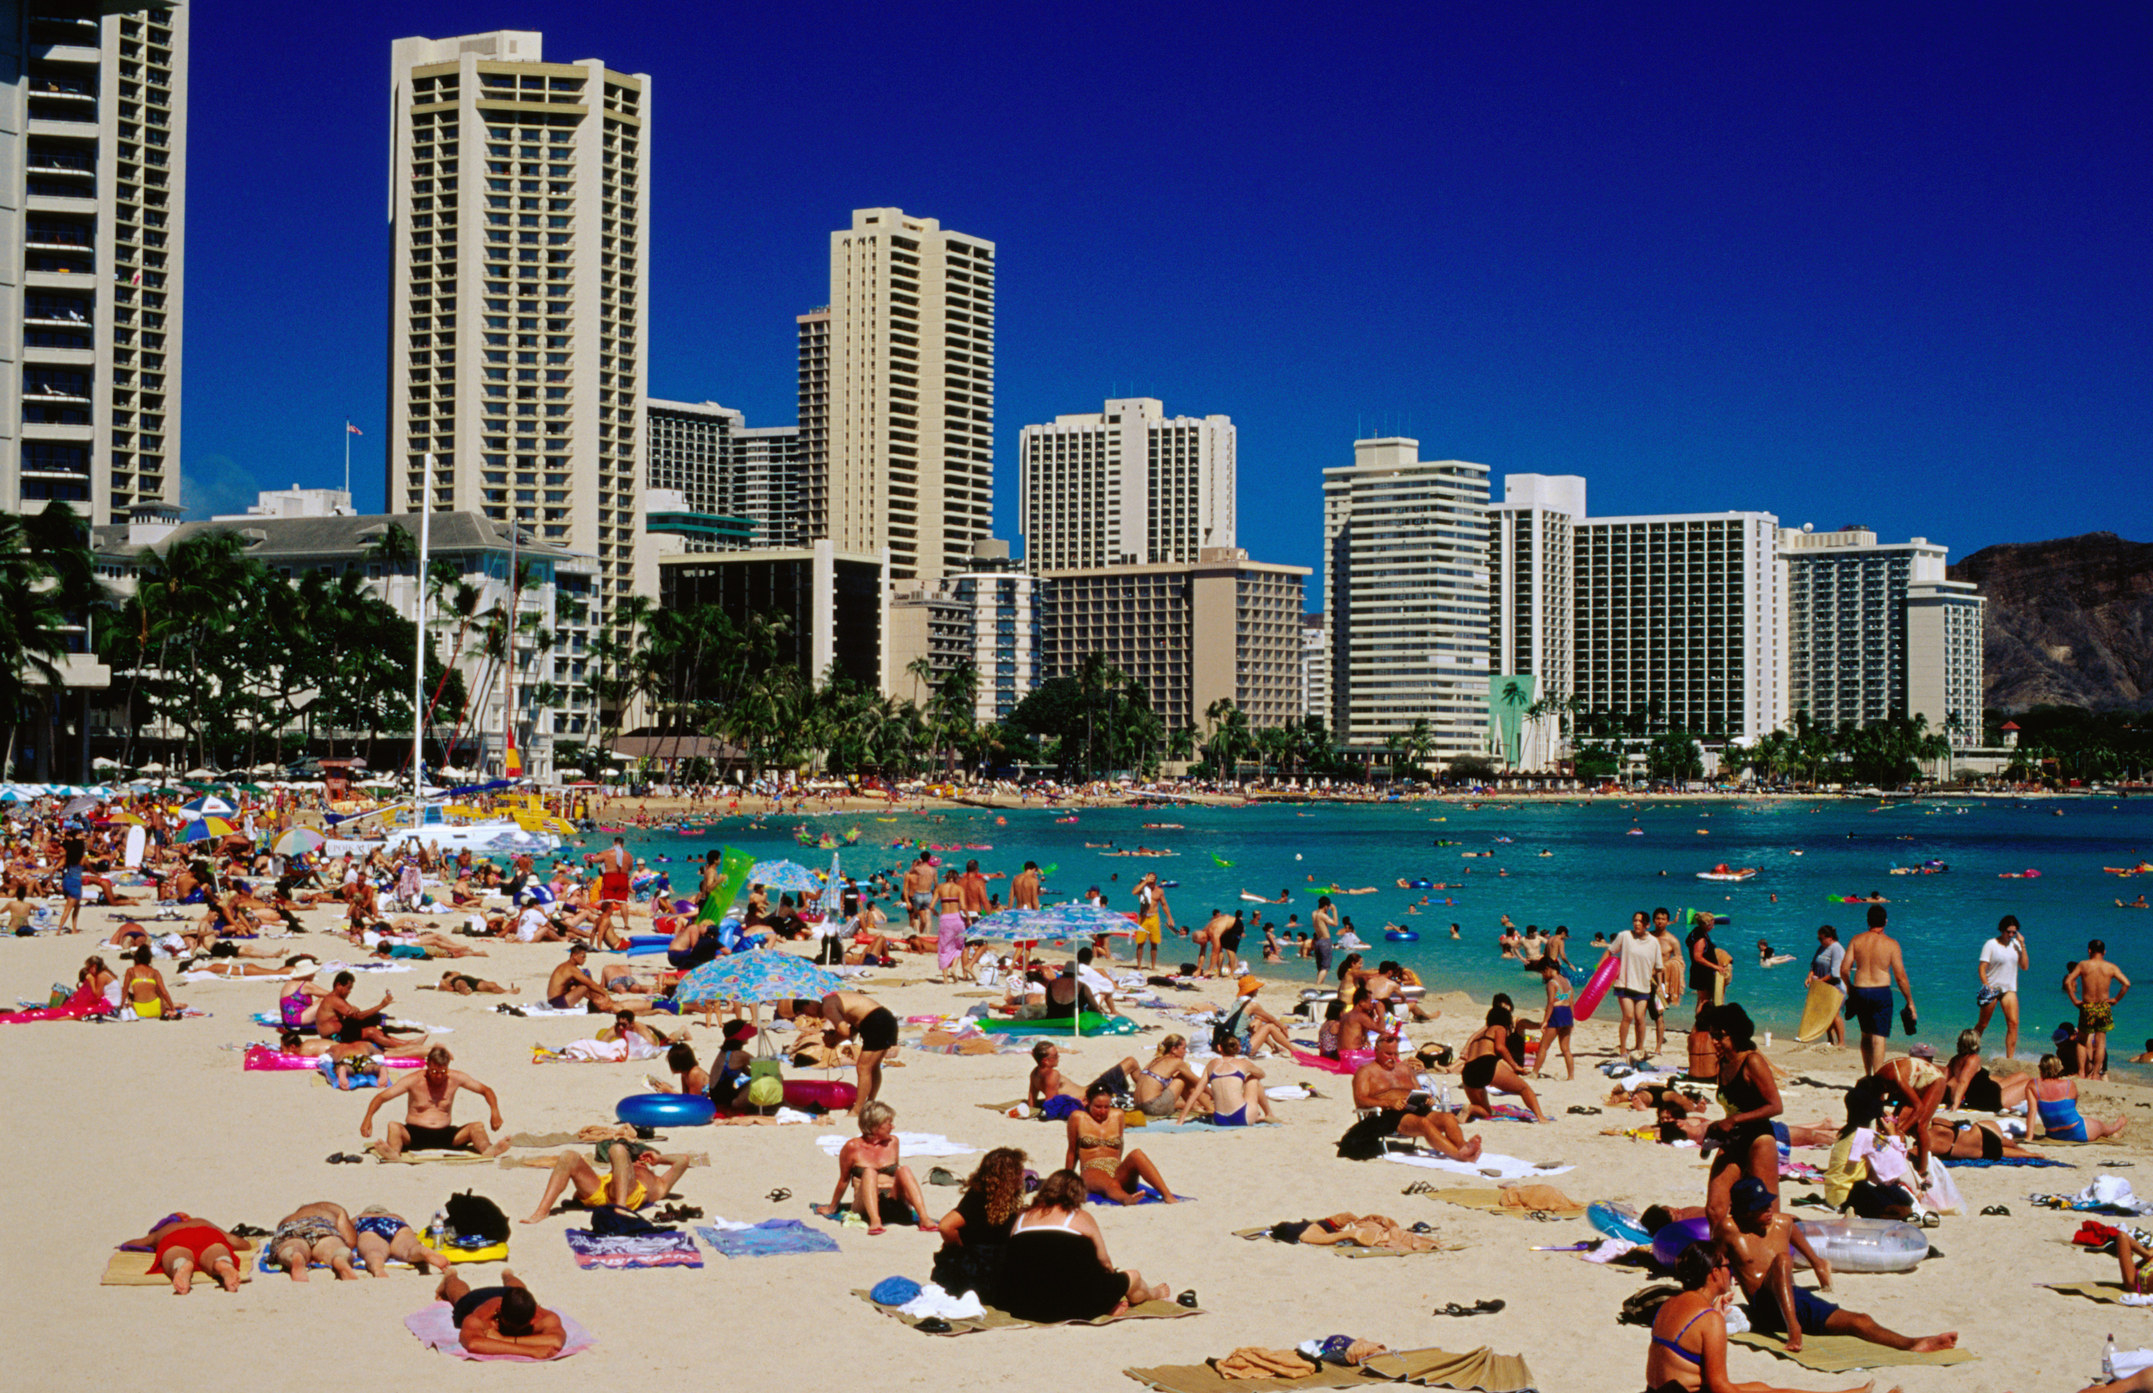 Waikiki beach in Oahu.